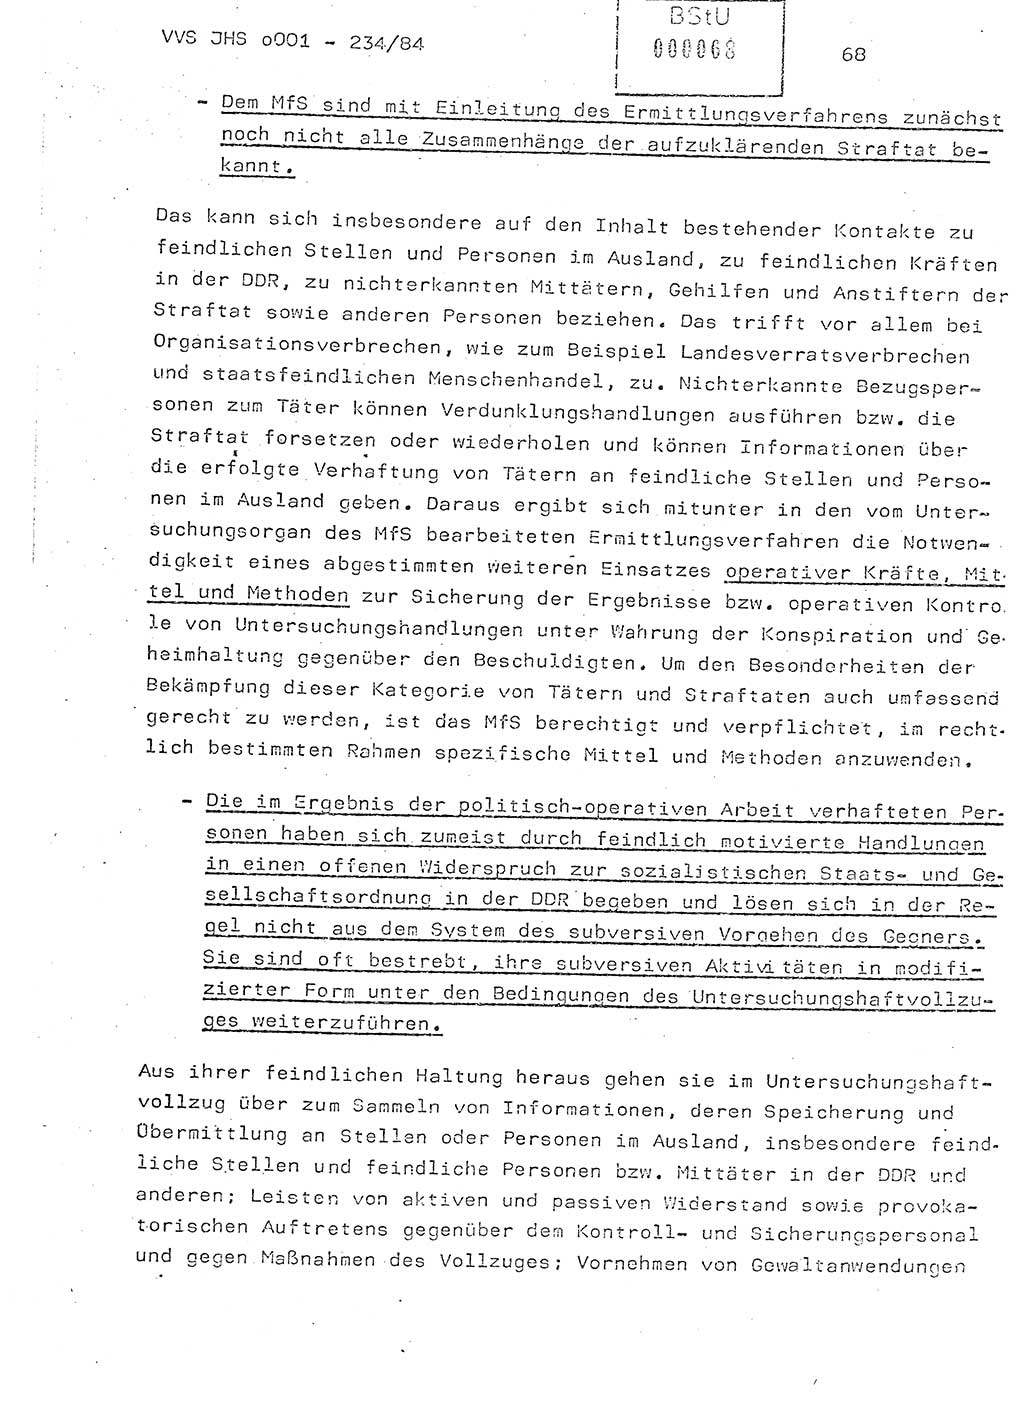 Dissertation Oberst Siegfried Rataizick (Abt. ⅩⅣ), Oberstleutnant Volkmar Heinz (Abt. ⅩⅣ), Oberstleutnant Werner Stein (HA Ⅸ), Hauptmann Heinz Conrad (JHS), Ministerium für Staatssicherheit (MfS) [Deutsche Demokratische Republik (DDR)], Juristische Hochschule (JHS), Vertrauliche Verschlußsache (VVS) o001-234/84, Potsdam 1984, Seite 68 (Diss. MfS DDR JHS VVS o001-234/84 1984, S. 68)